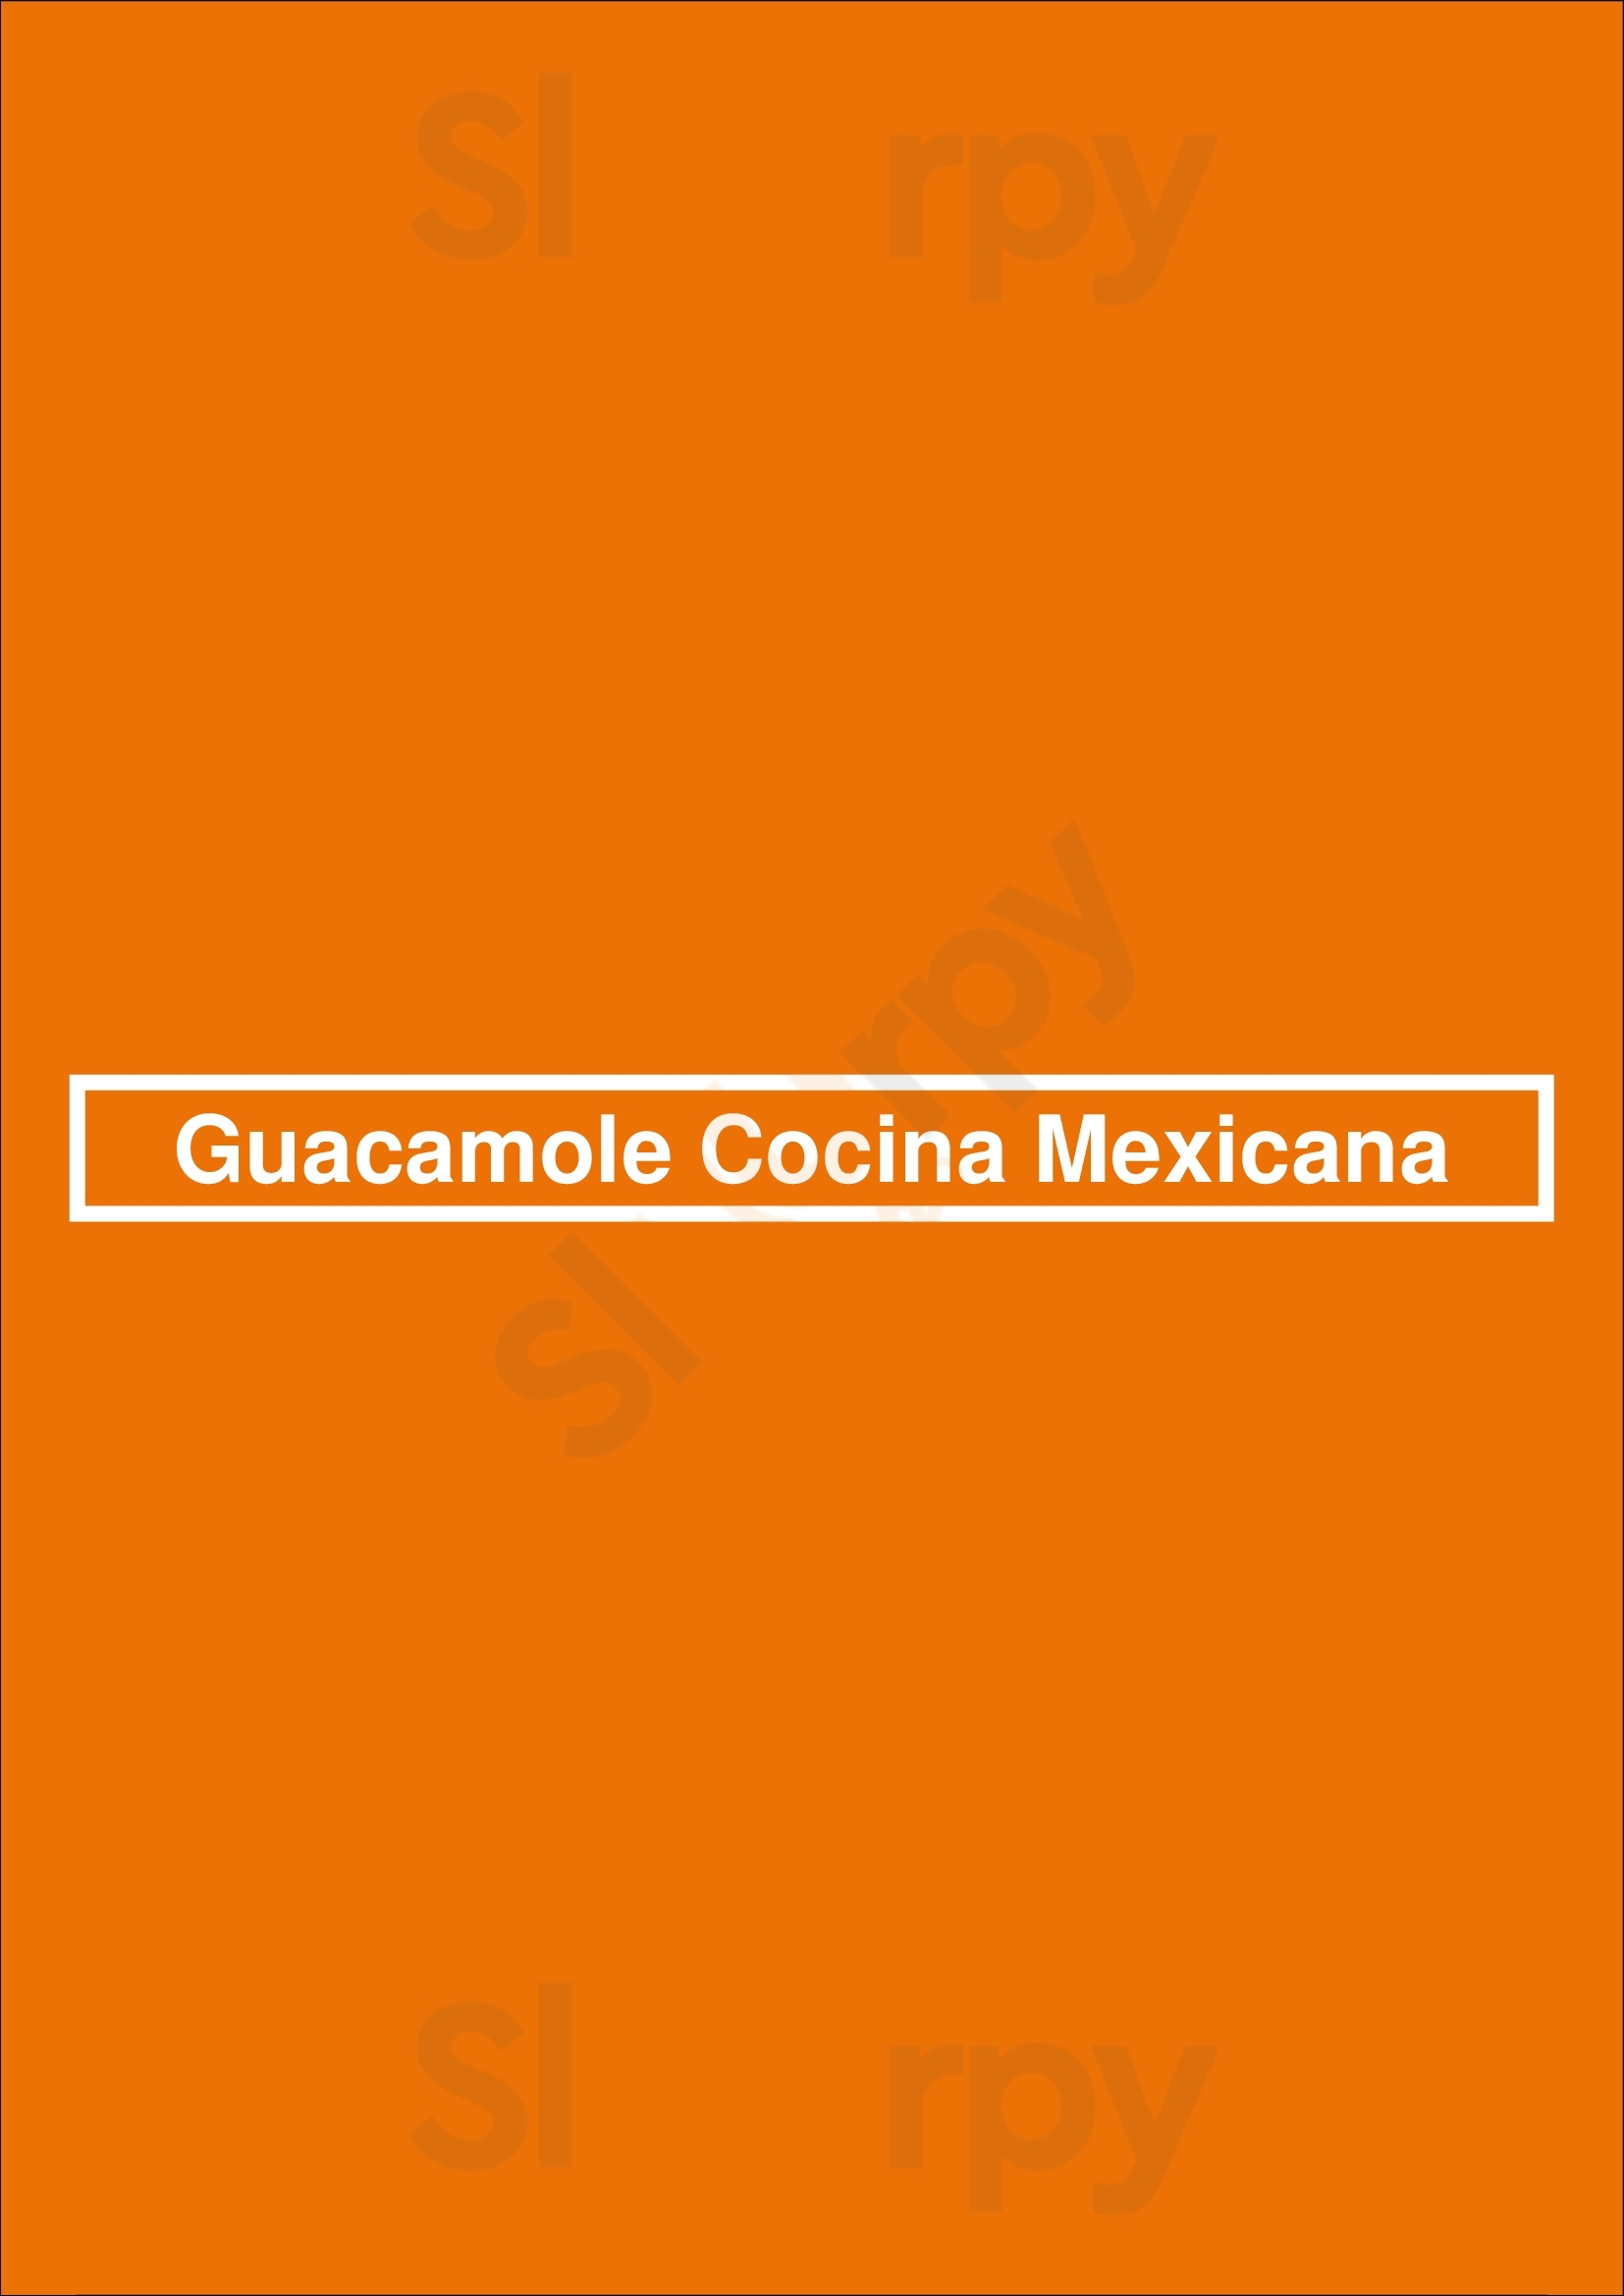 Guacamole Cocina Mexicana - Floripa Florianópolis Menu - 1